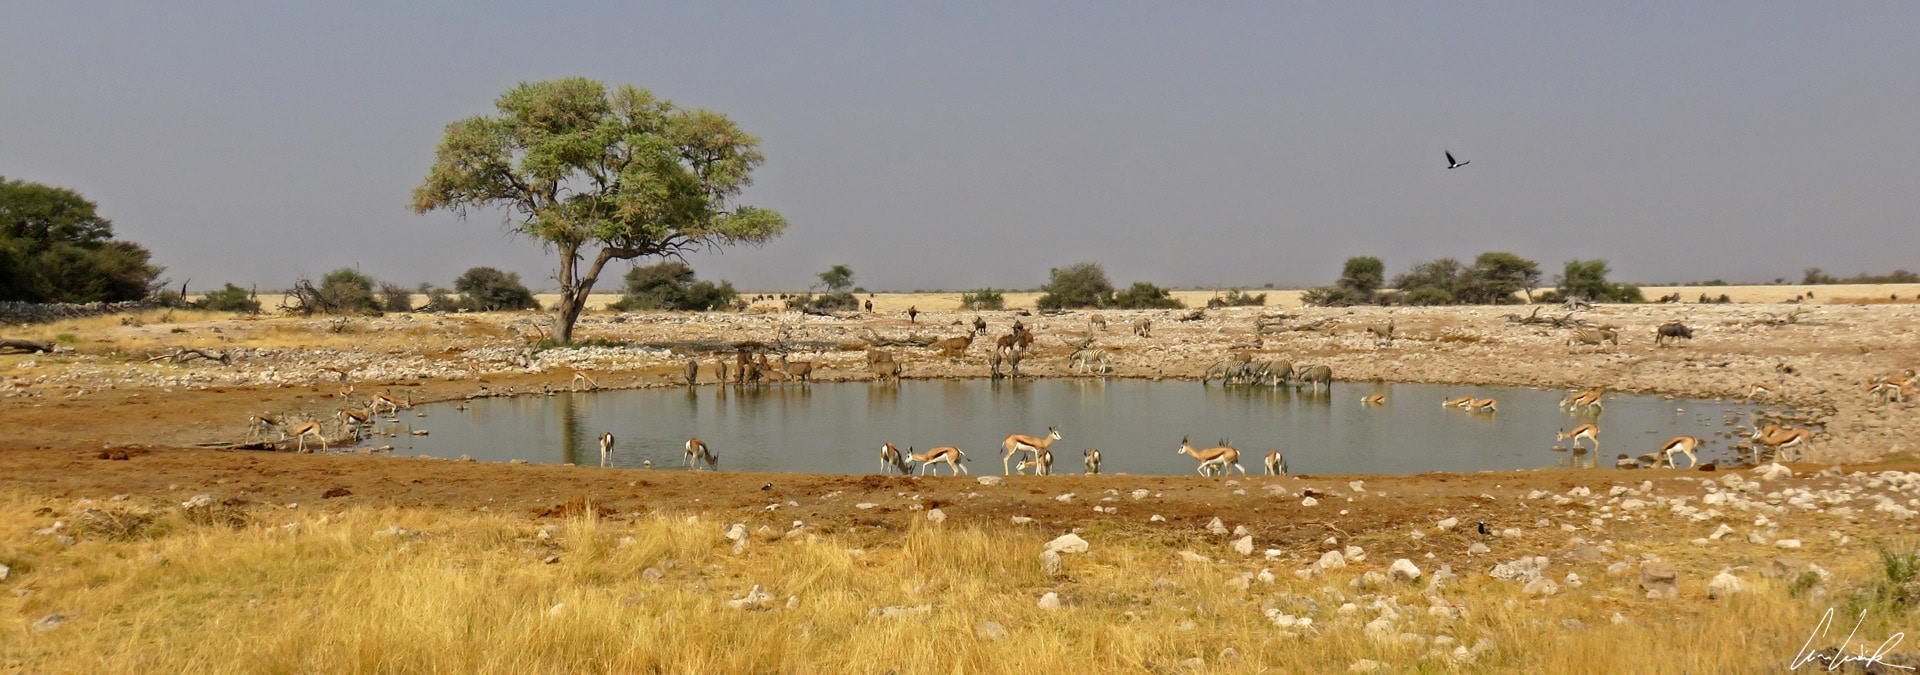 Les points d’eau d’Etosha sont sans aucun doute les endroits du parc les plus fréquentés par les animaux. La diversité des espèces buvant en même temps est vraiment très surprenante.